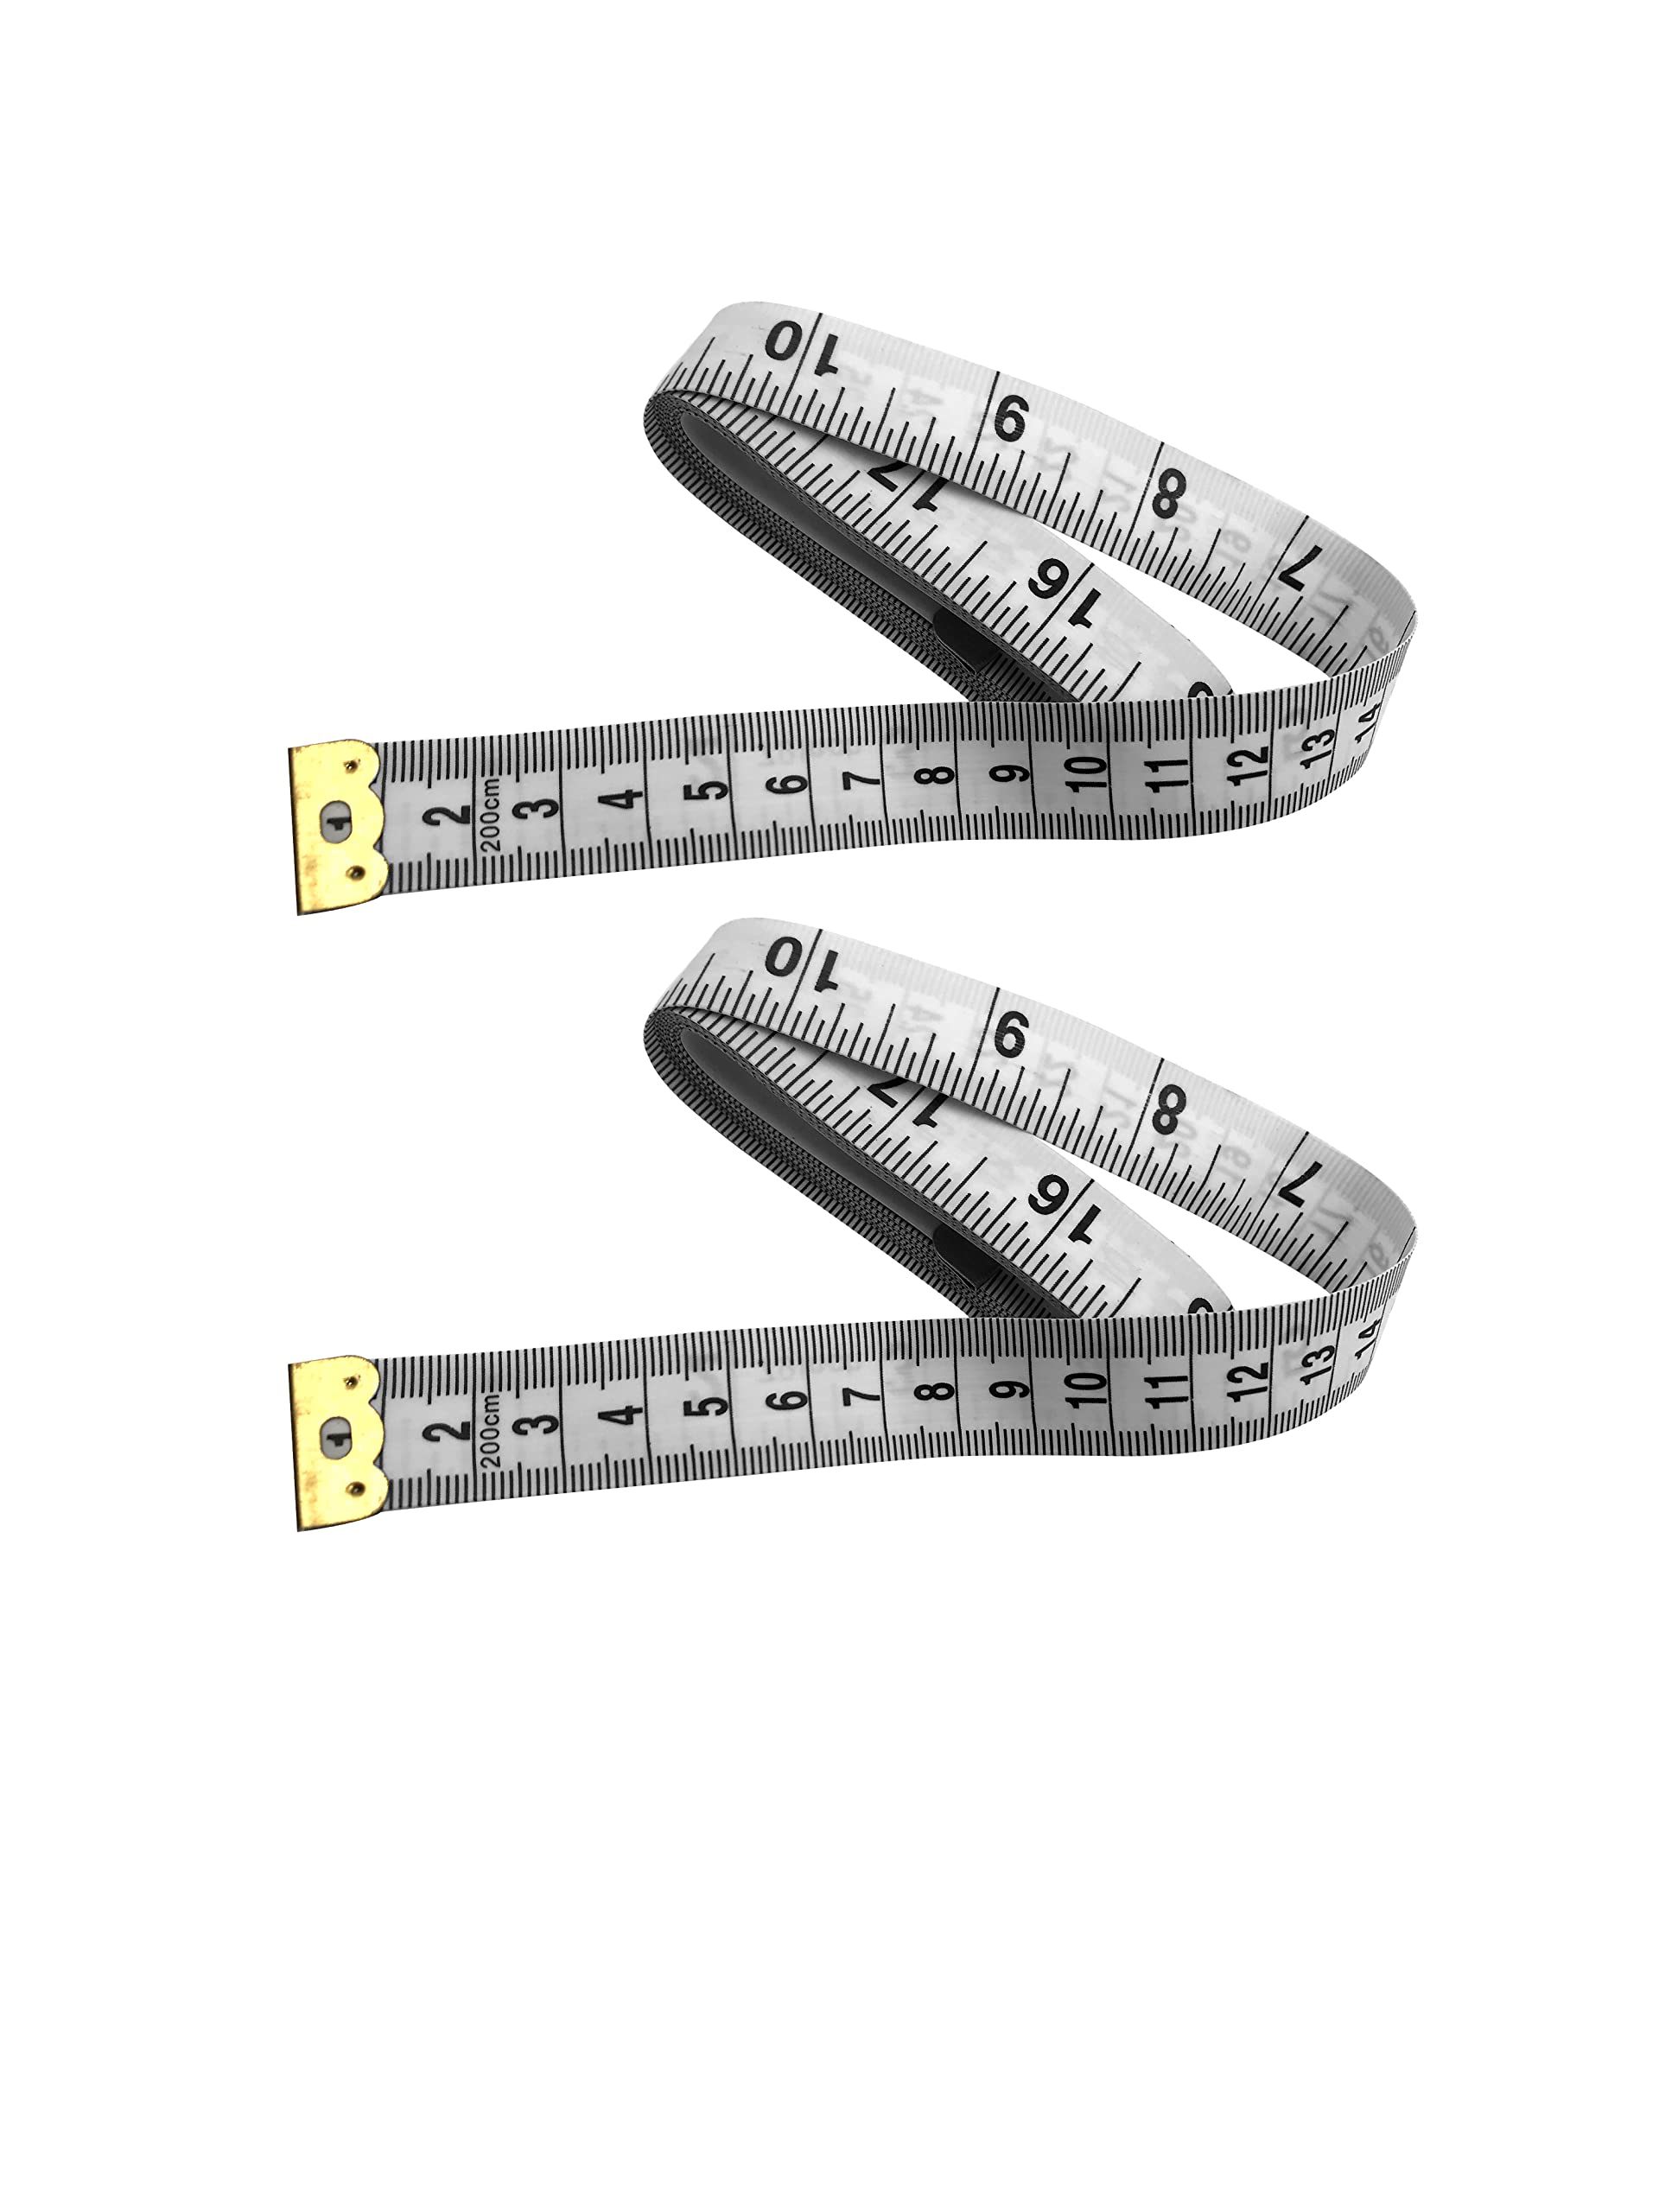 KNEEDARKYEAR 60-Inch 1.5 / 2.0 Meter Soft Retractable Measuring